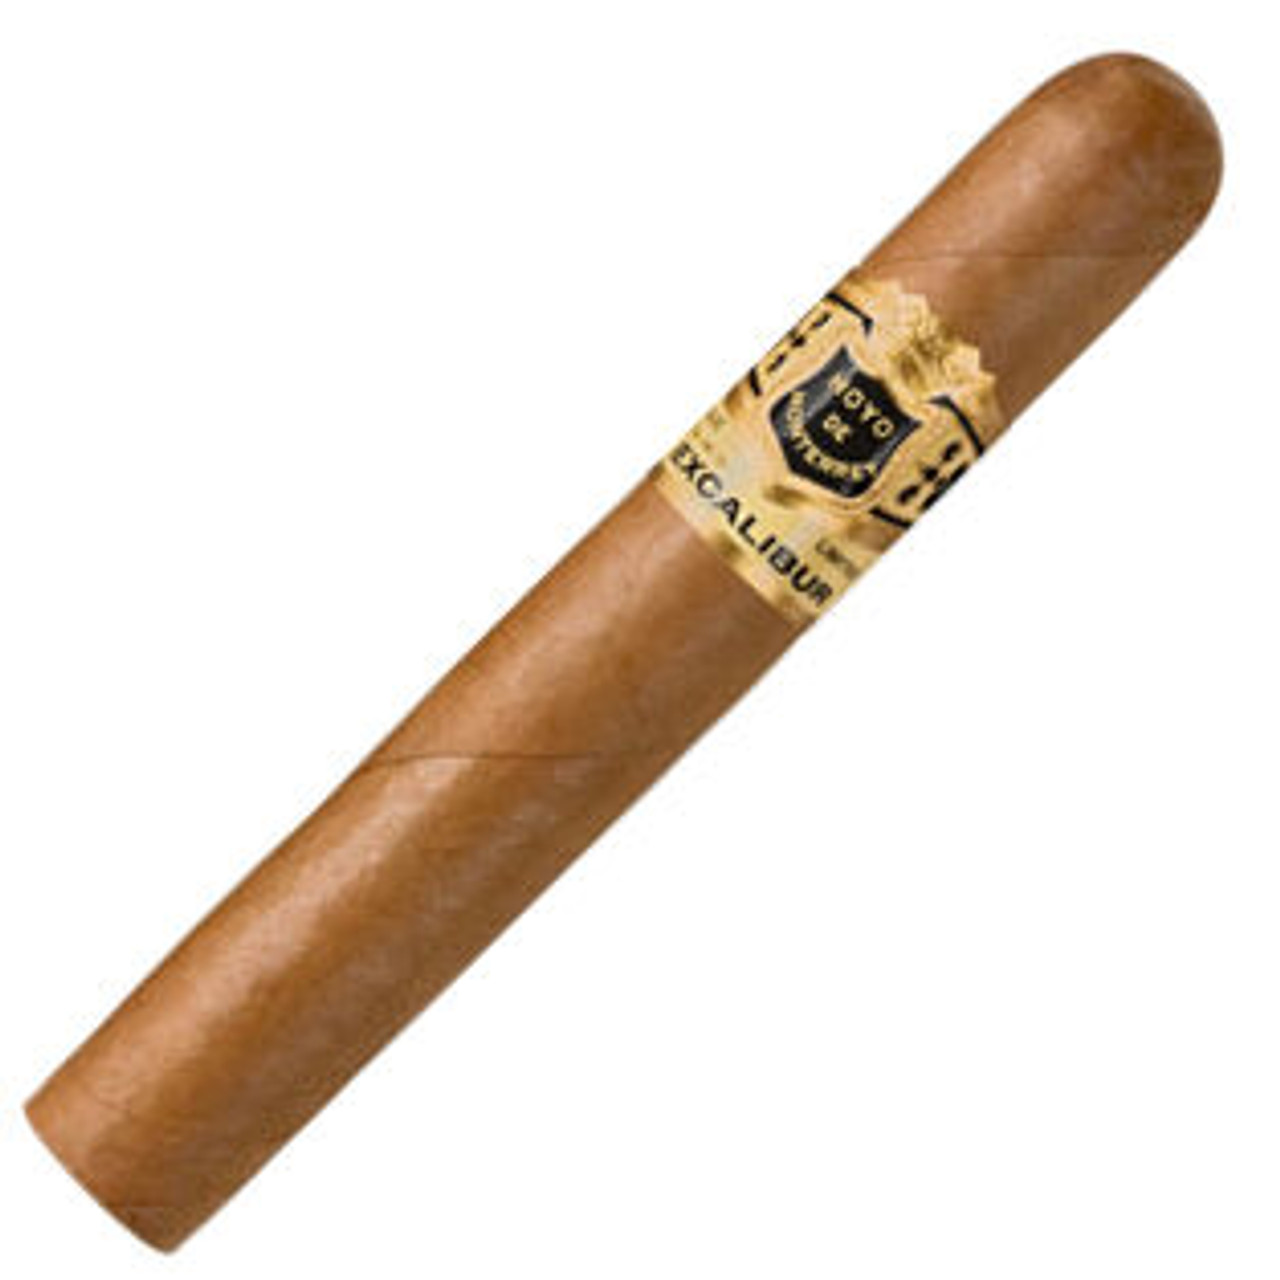 Excalibur Epicure Cigars - 5.25 x 50 Single